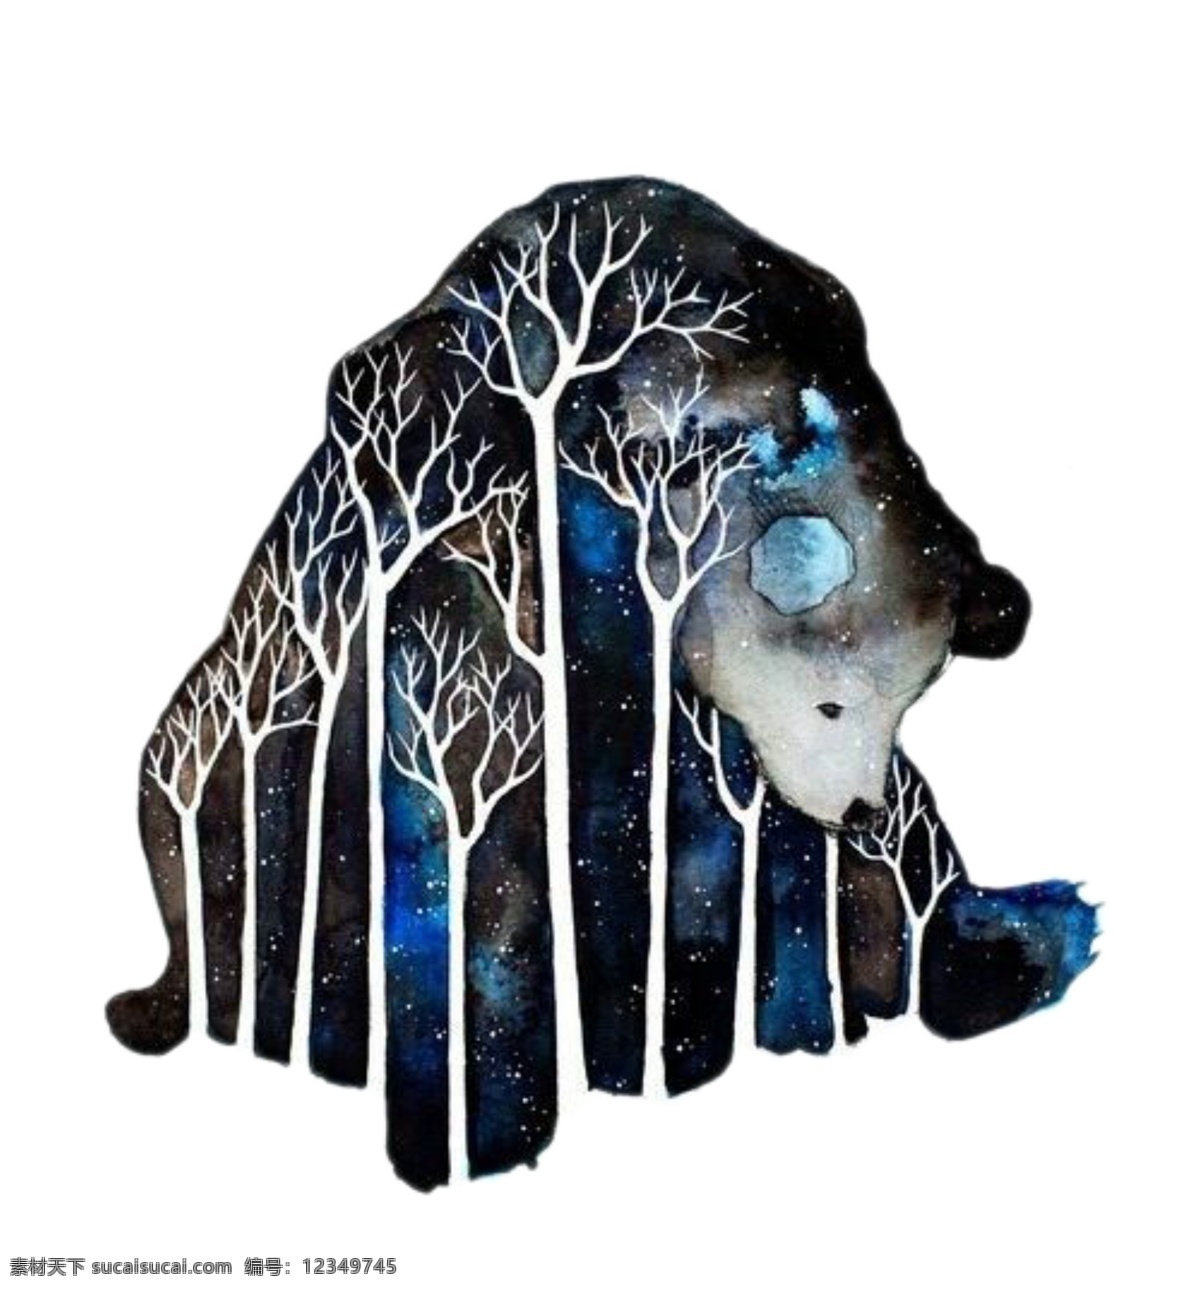 迷幻 唯美 星空 抽象 树木 笨重 狗熊 动物 底纹边框 背景底纹